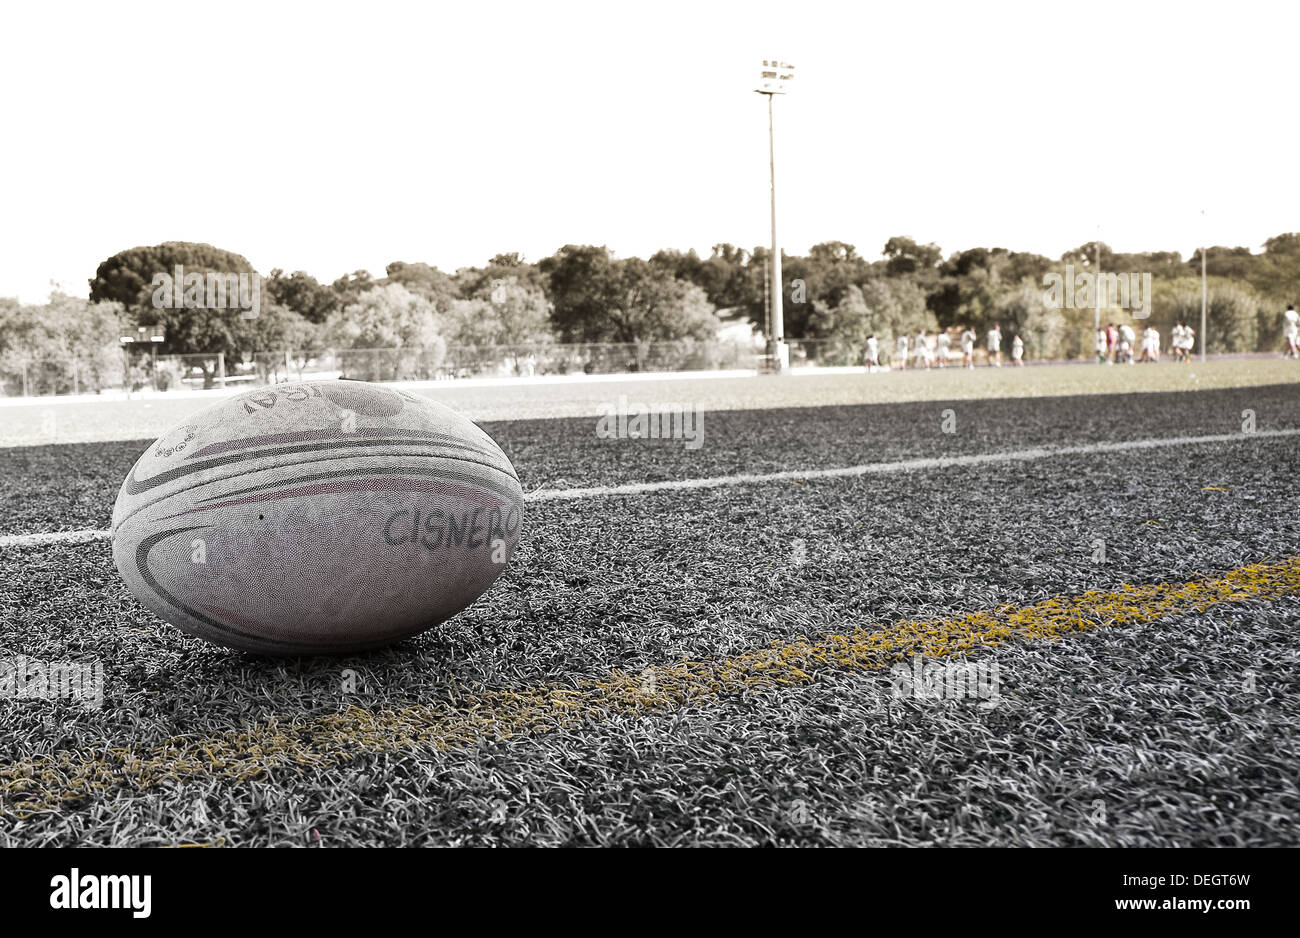 Ballon de rugby de l'équipe de Cisneros dans le domaine, Madrid, Espagne Banque D'Images